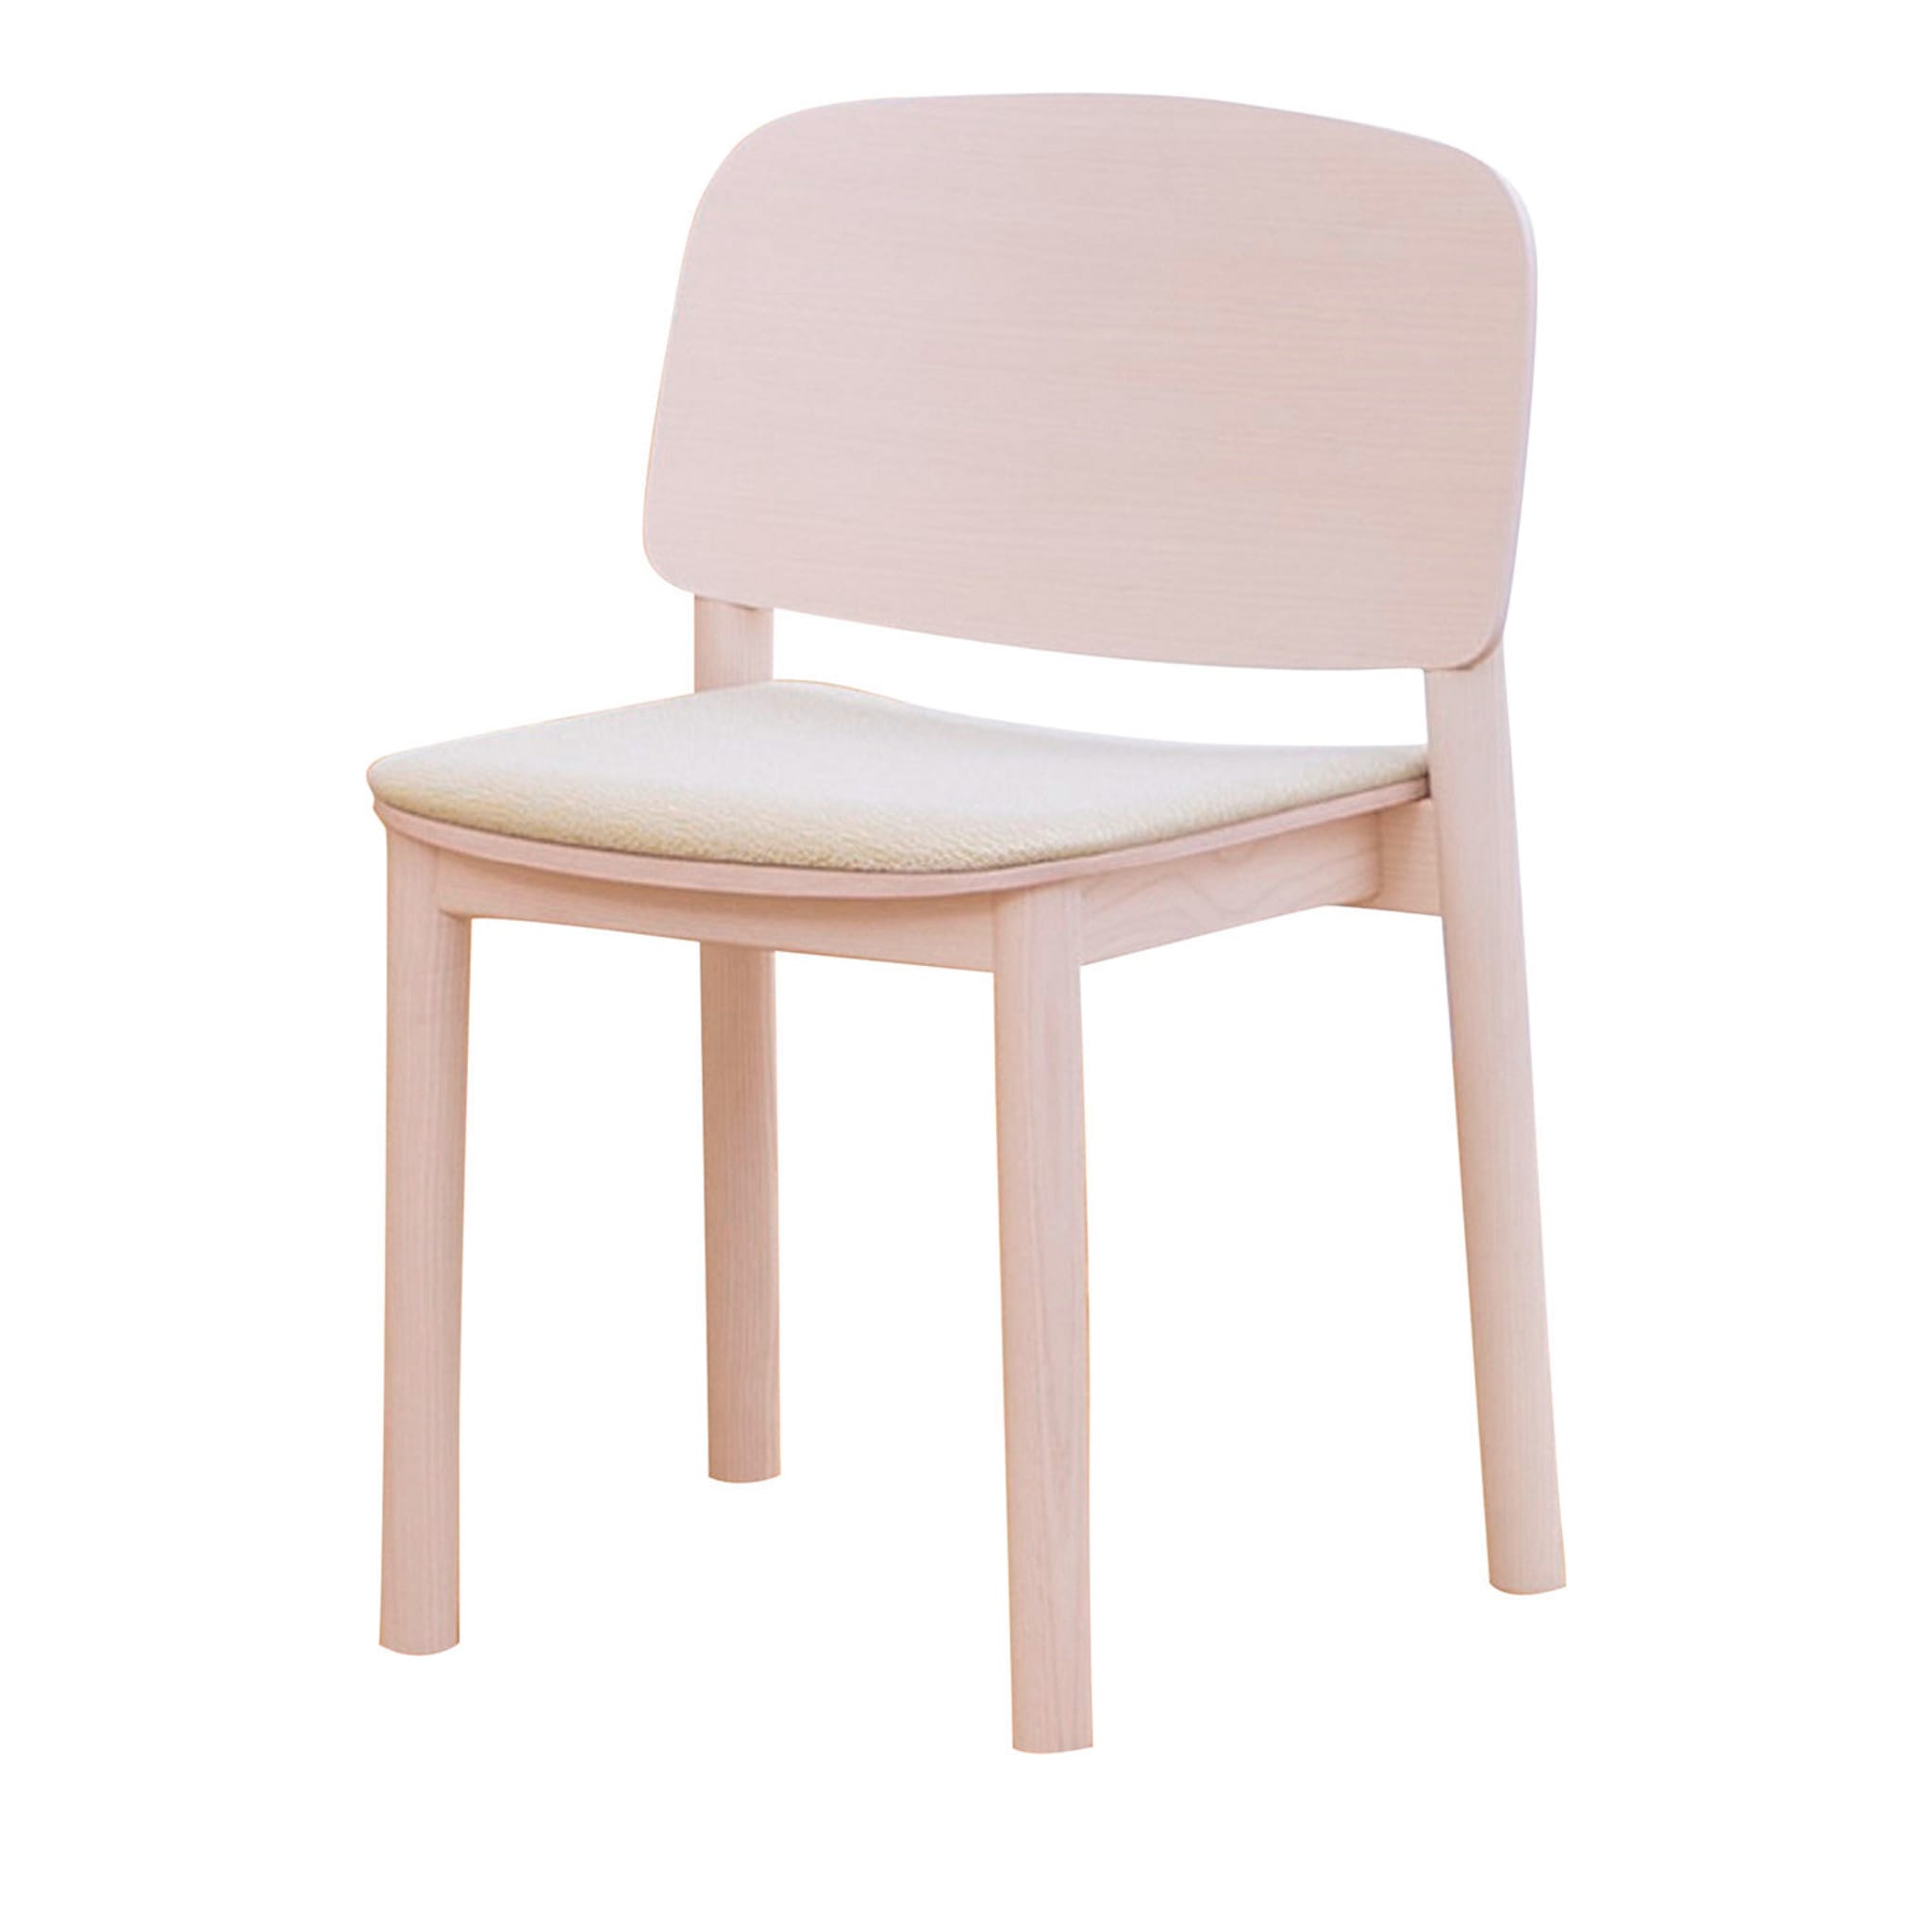 White Chair by Harri Koskinen - Main view